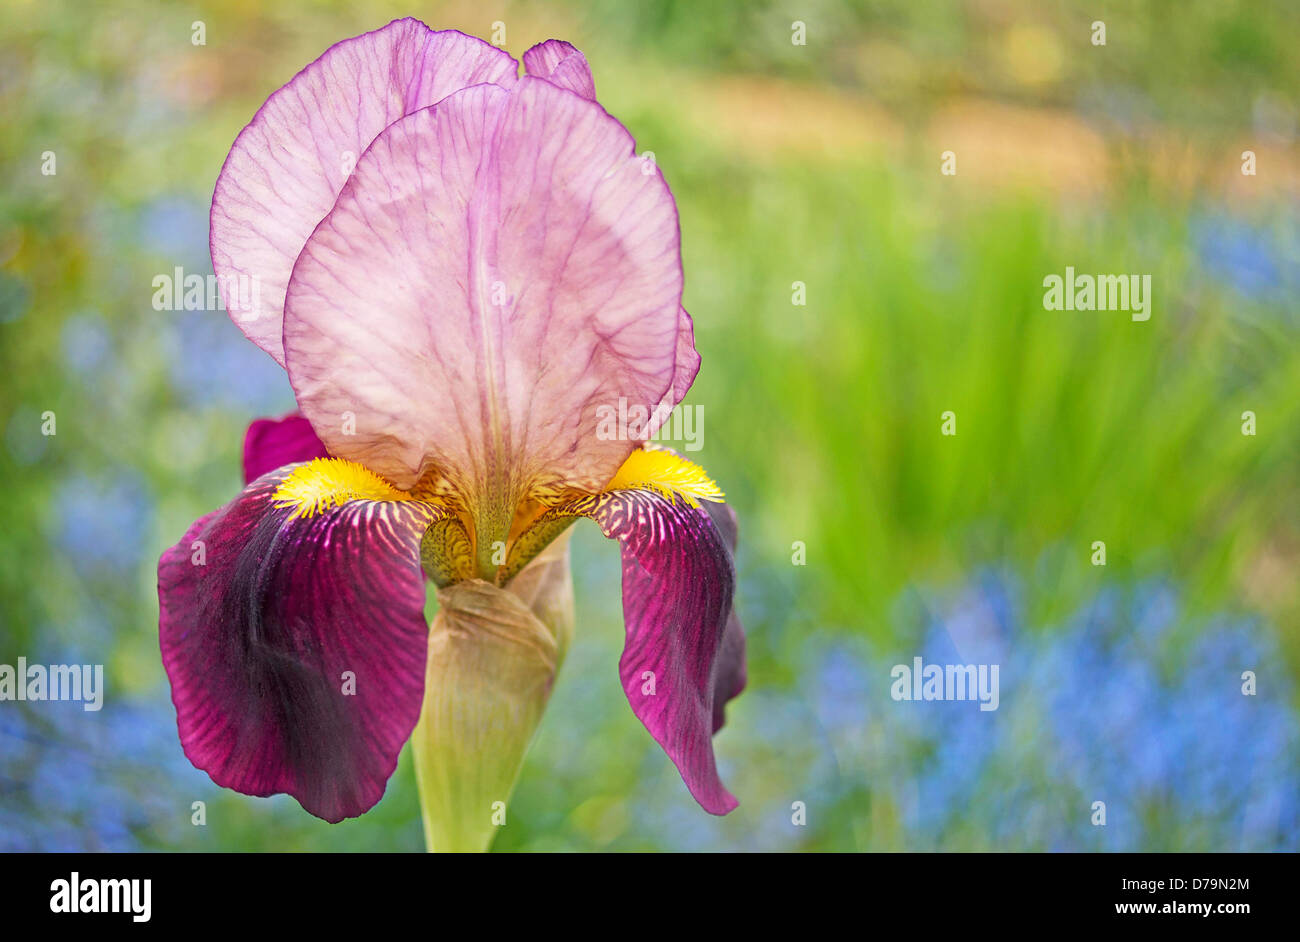 Iris barbado, una sola flor con barba amarilla brillante que se extiende por el centro del pétalo colgantes púrpura o caída. Foto de stock